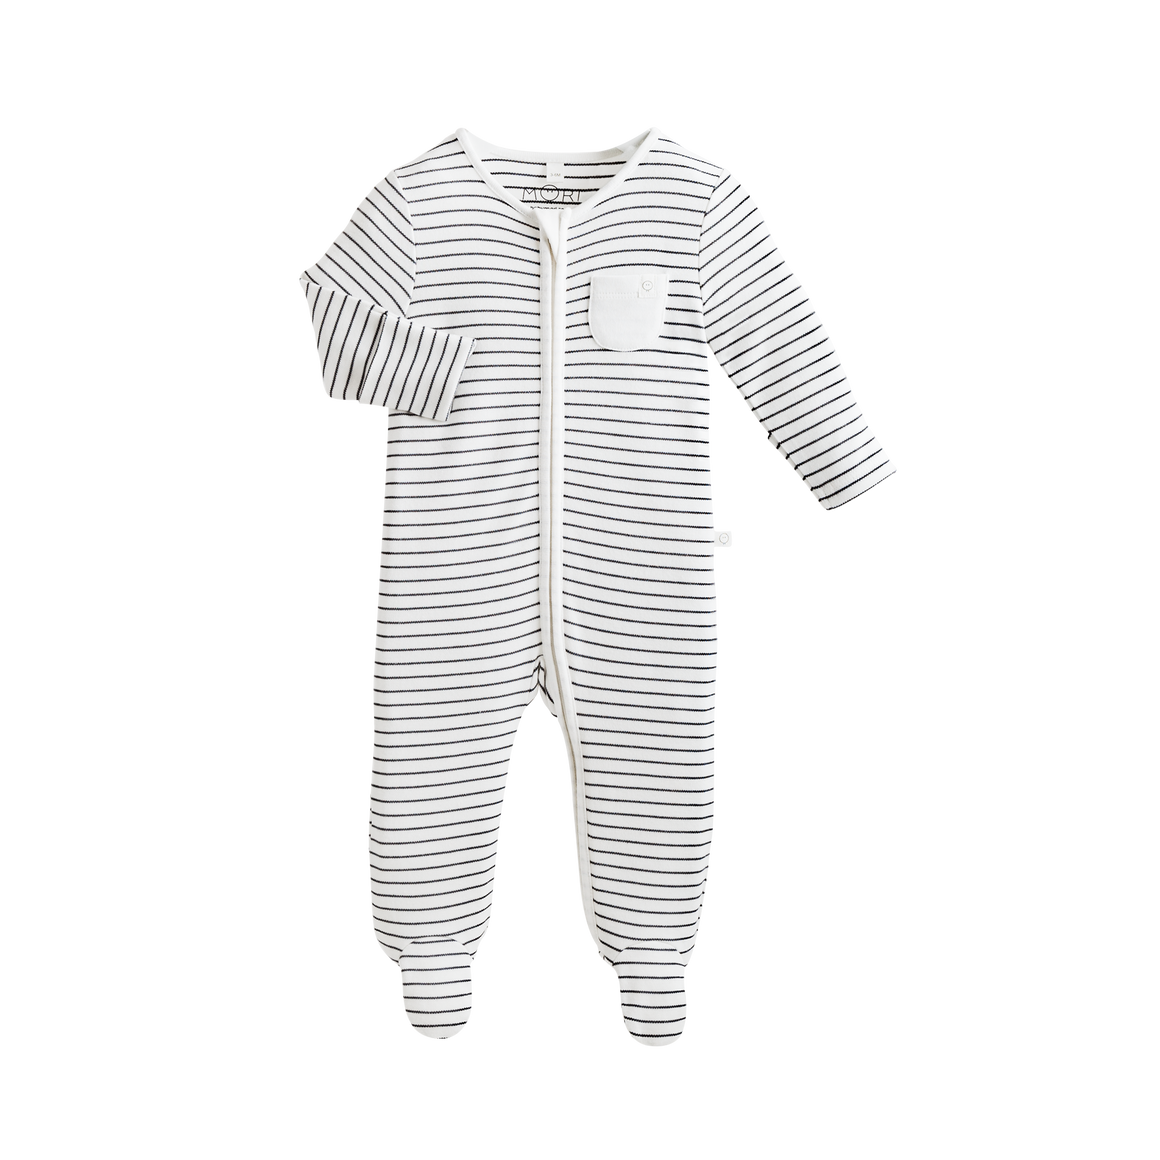 Zip-Up Sleepsuit in Grey Stripe